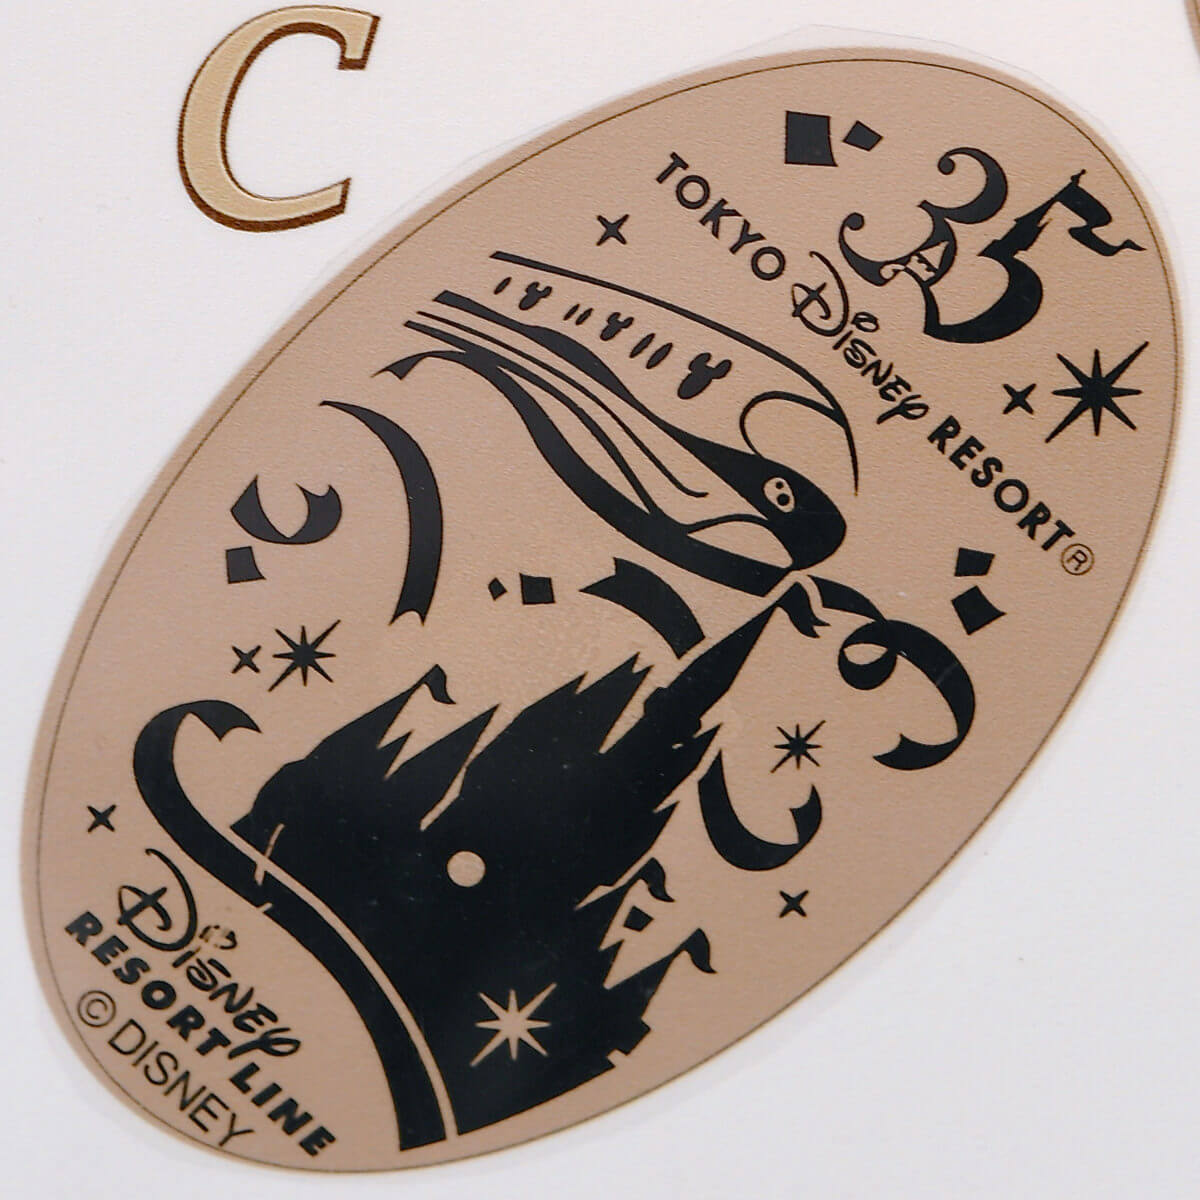 リボンコスチュームのミッキー フレンズ勢揃い ディズニーリゾートライン Tdr35周年 スーベニアメダル